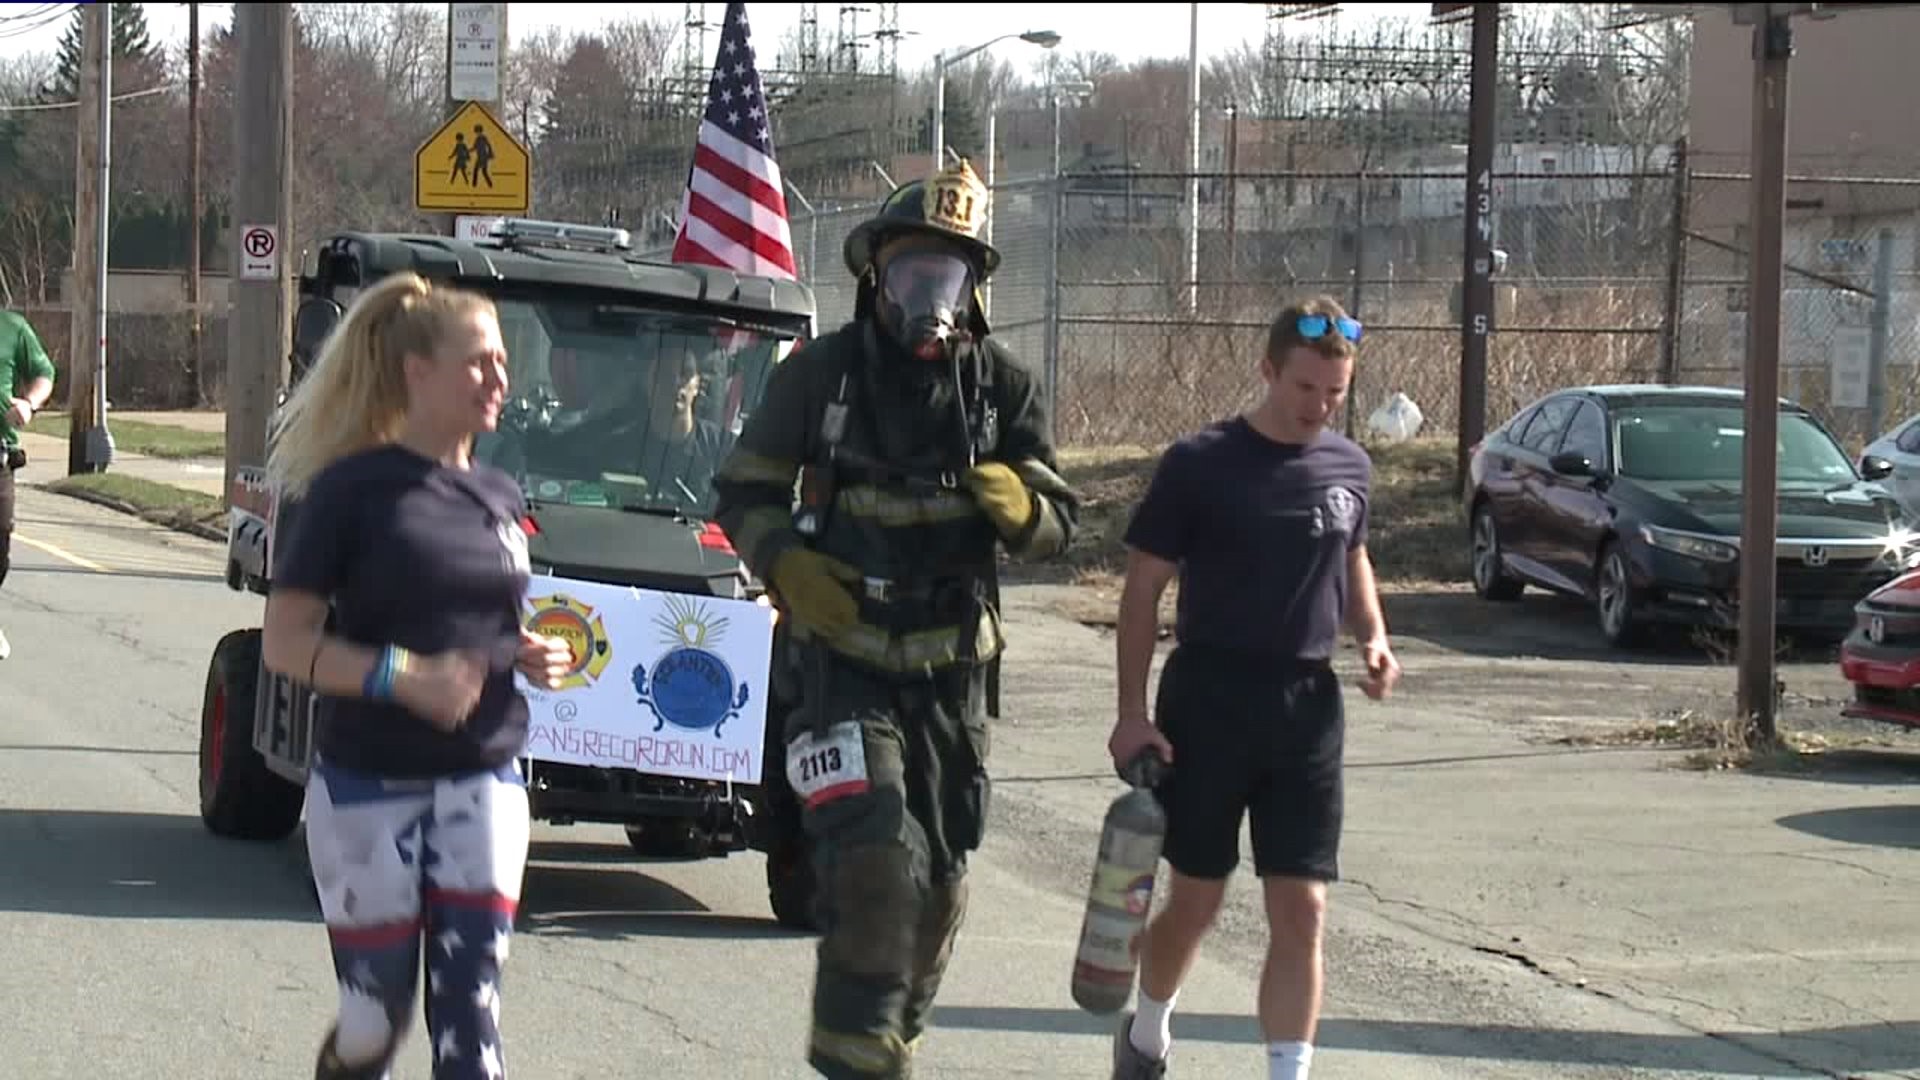 Firefighter Runs Scranton Half Marathon in Full Gear